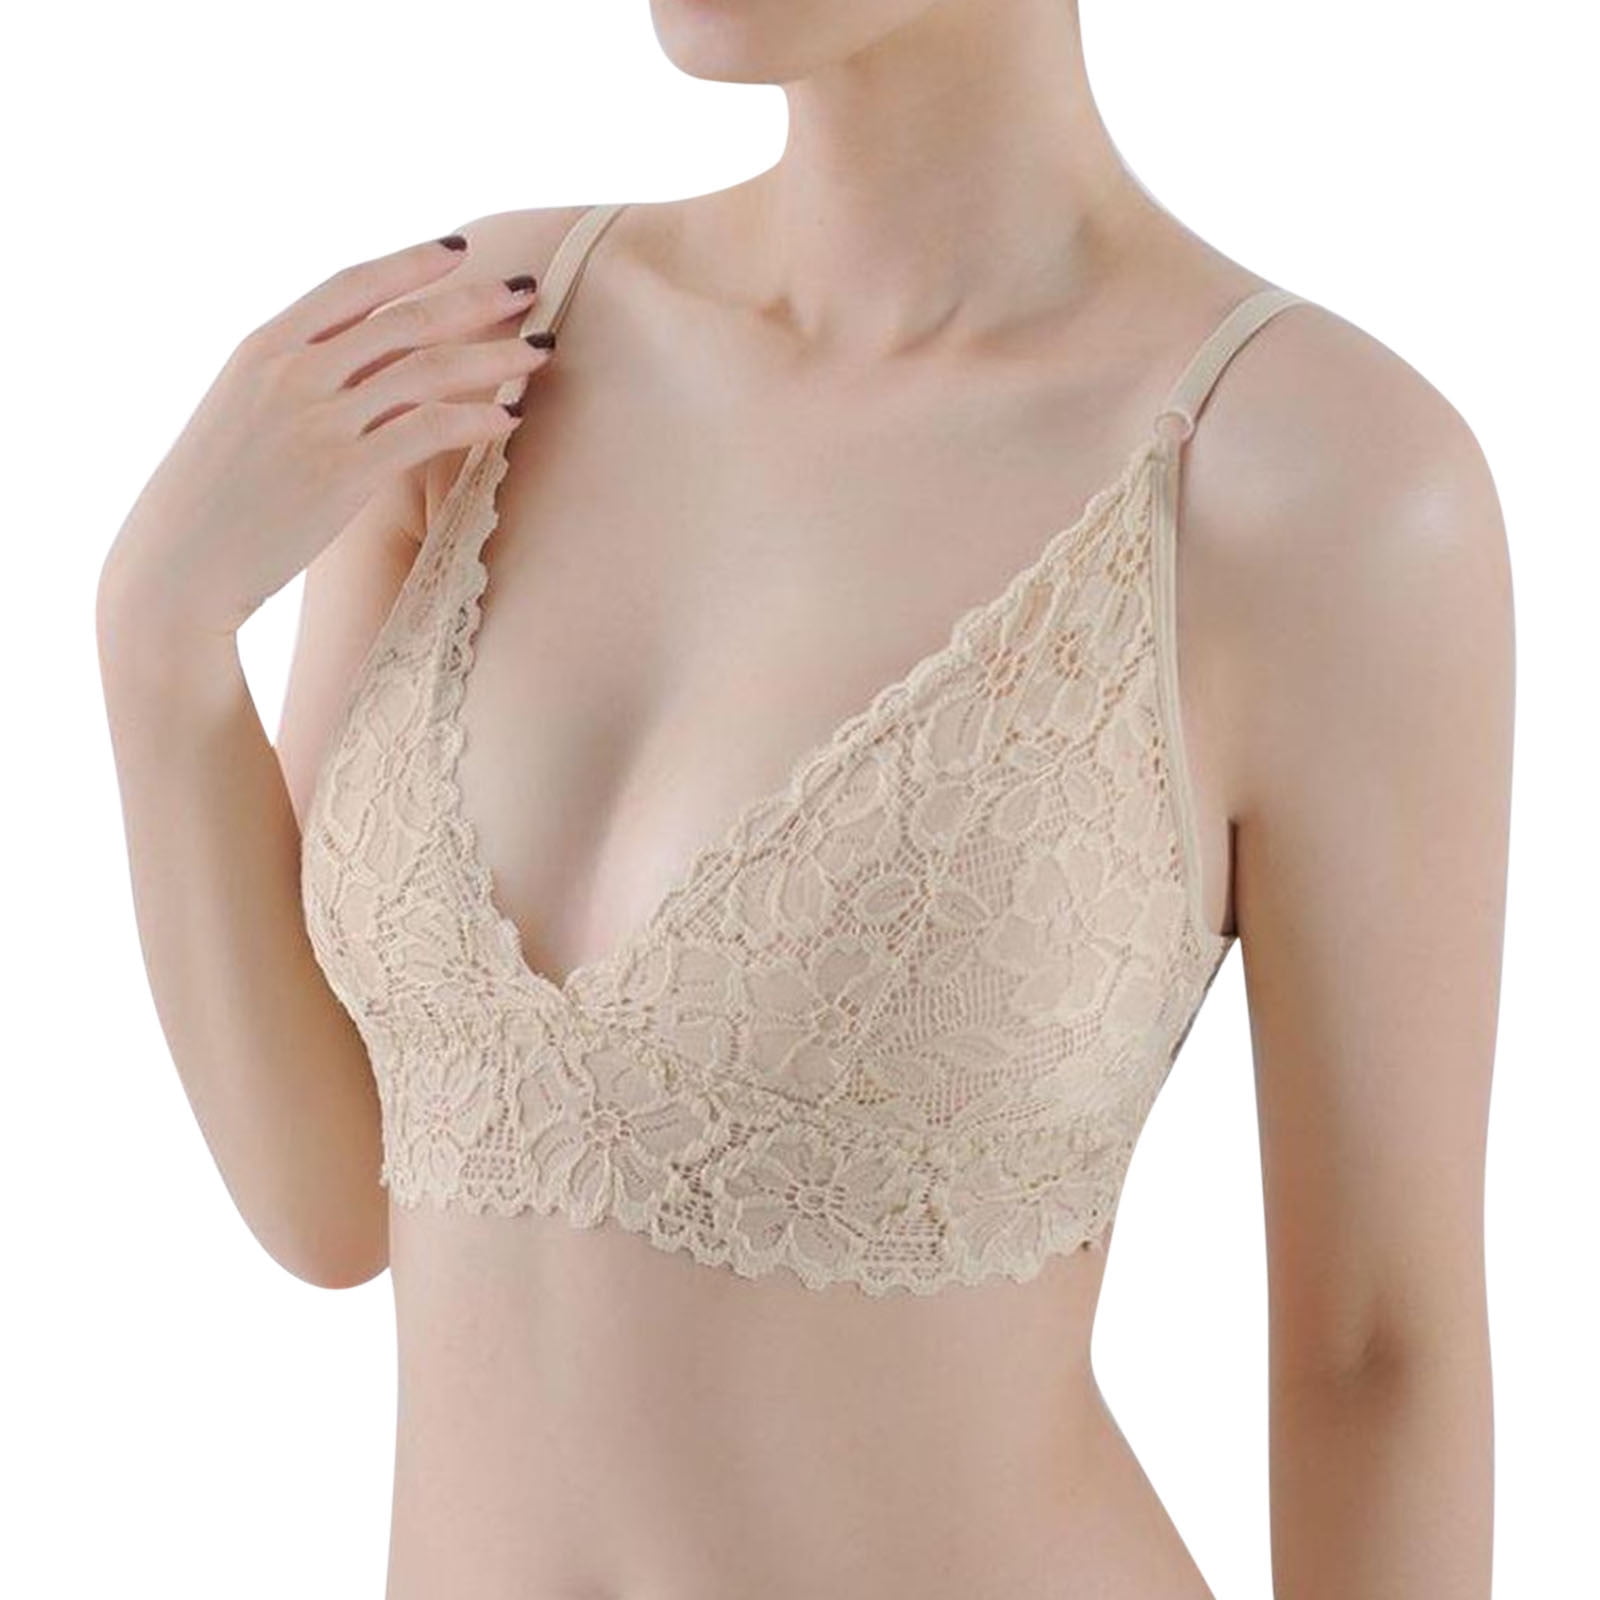 women's underwire bras  ComfortKing USA, Inc., Hanesbrands